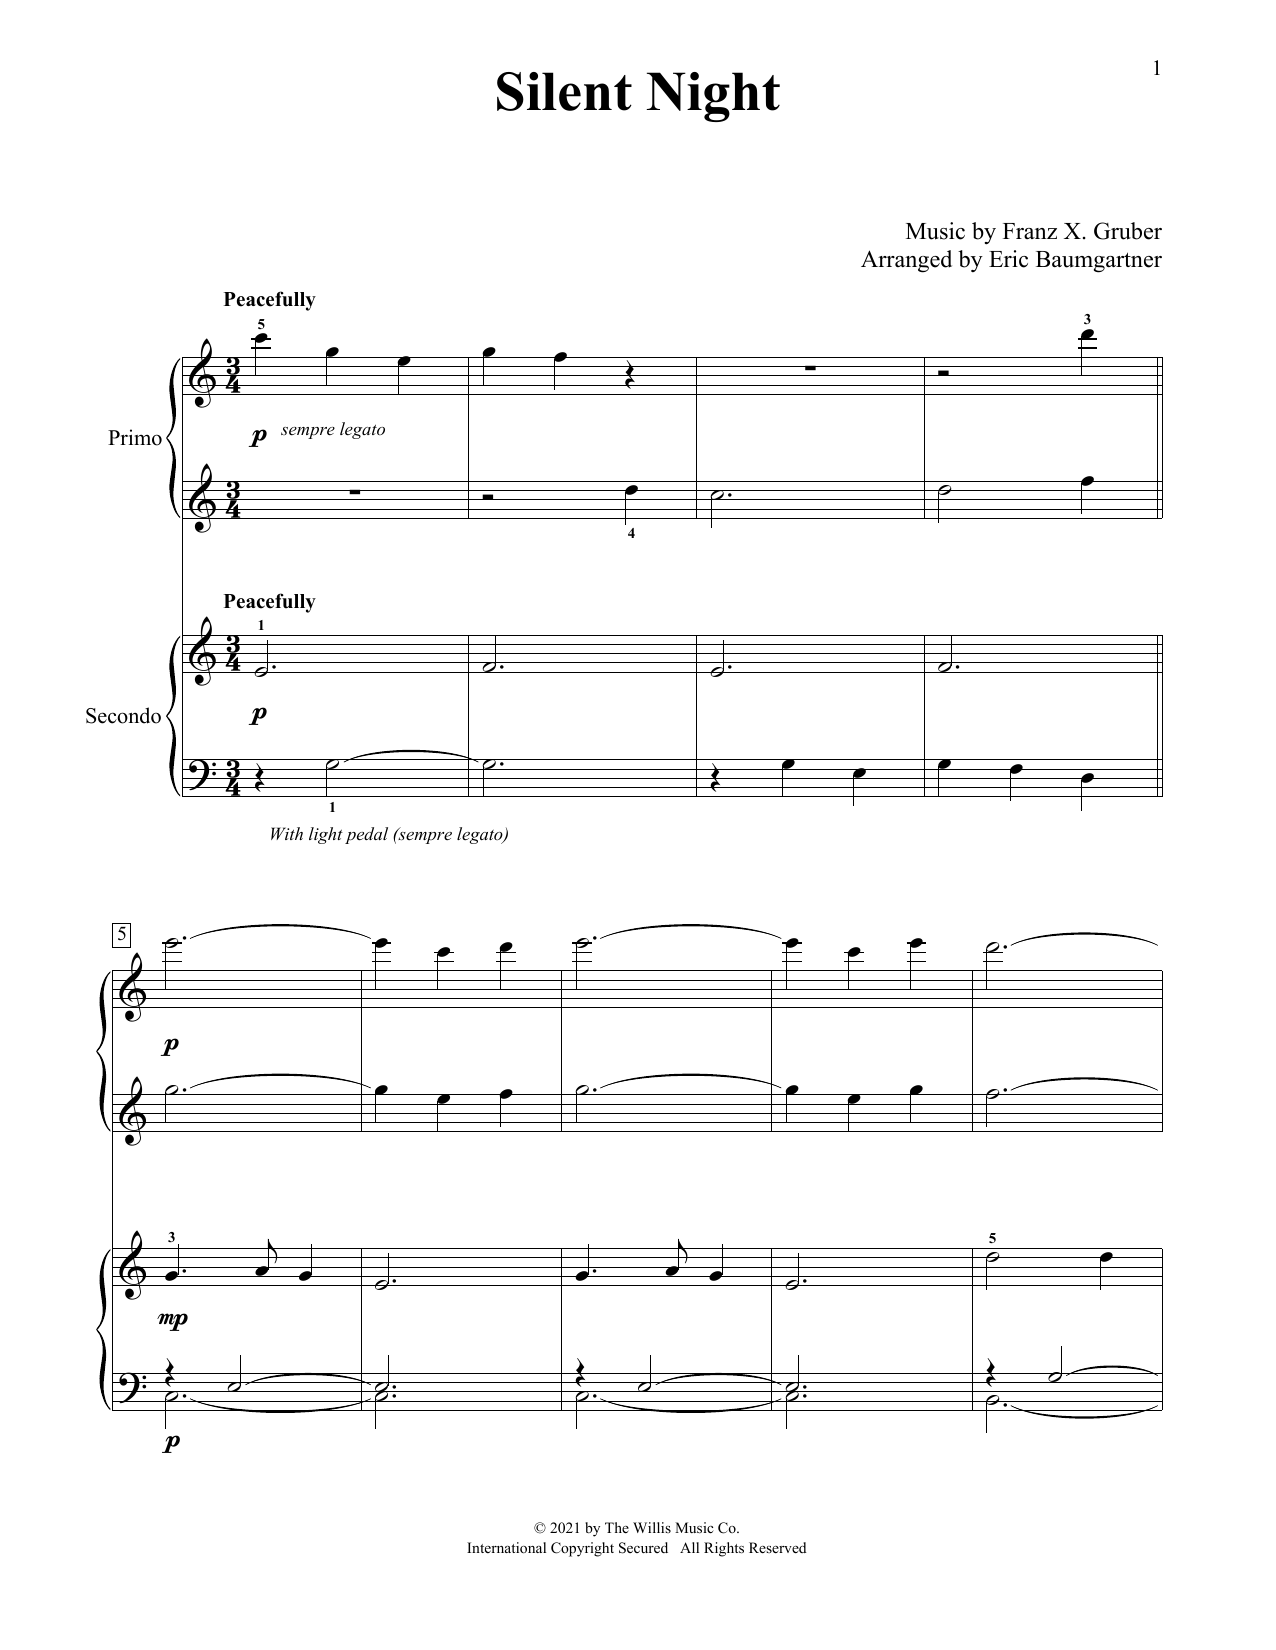 Franz X. Grüber Silent Night (arr. Eric Baumgartner) Sheet Music Notes & Chords for Piano Duet - Download or Print PDF